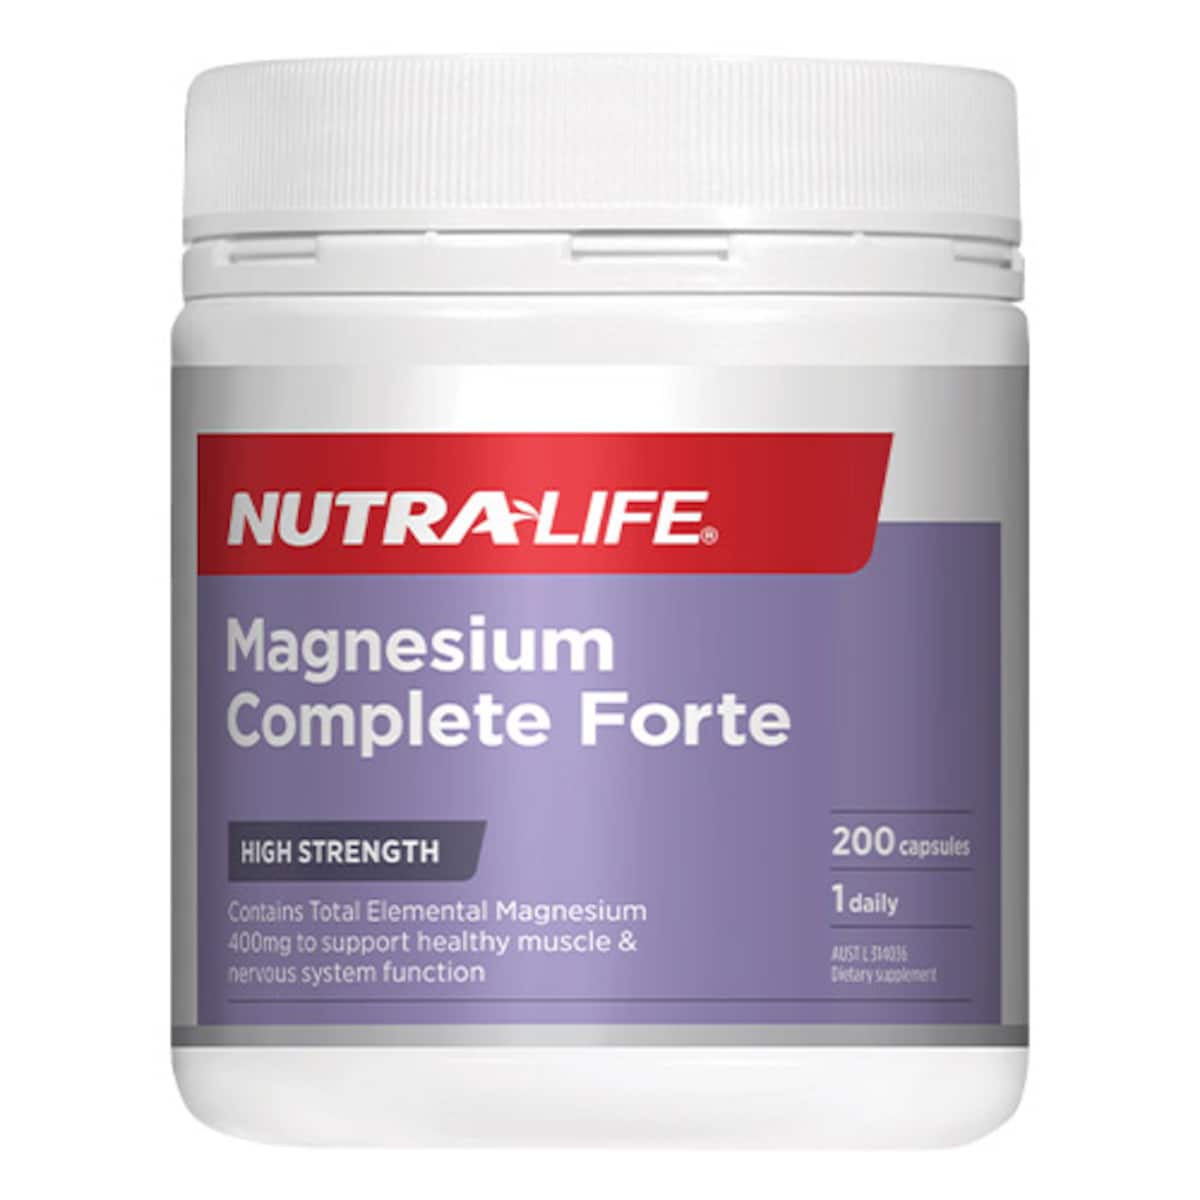 Nutra-Life Magnesium Complete Forte 200 Capsules Australia